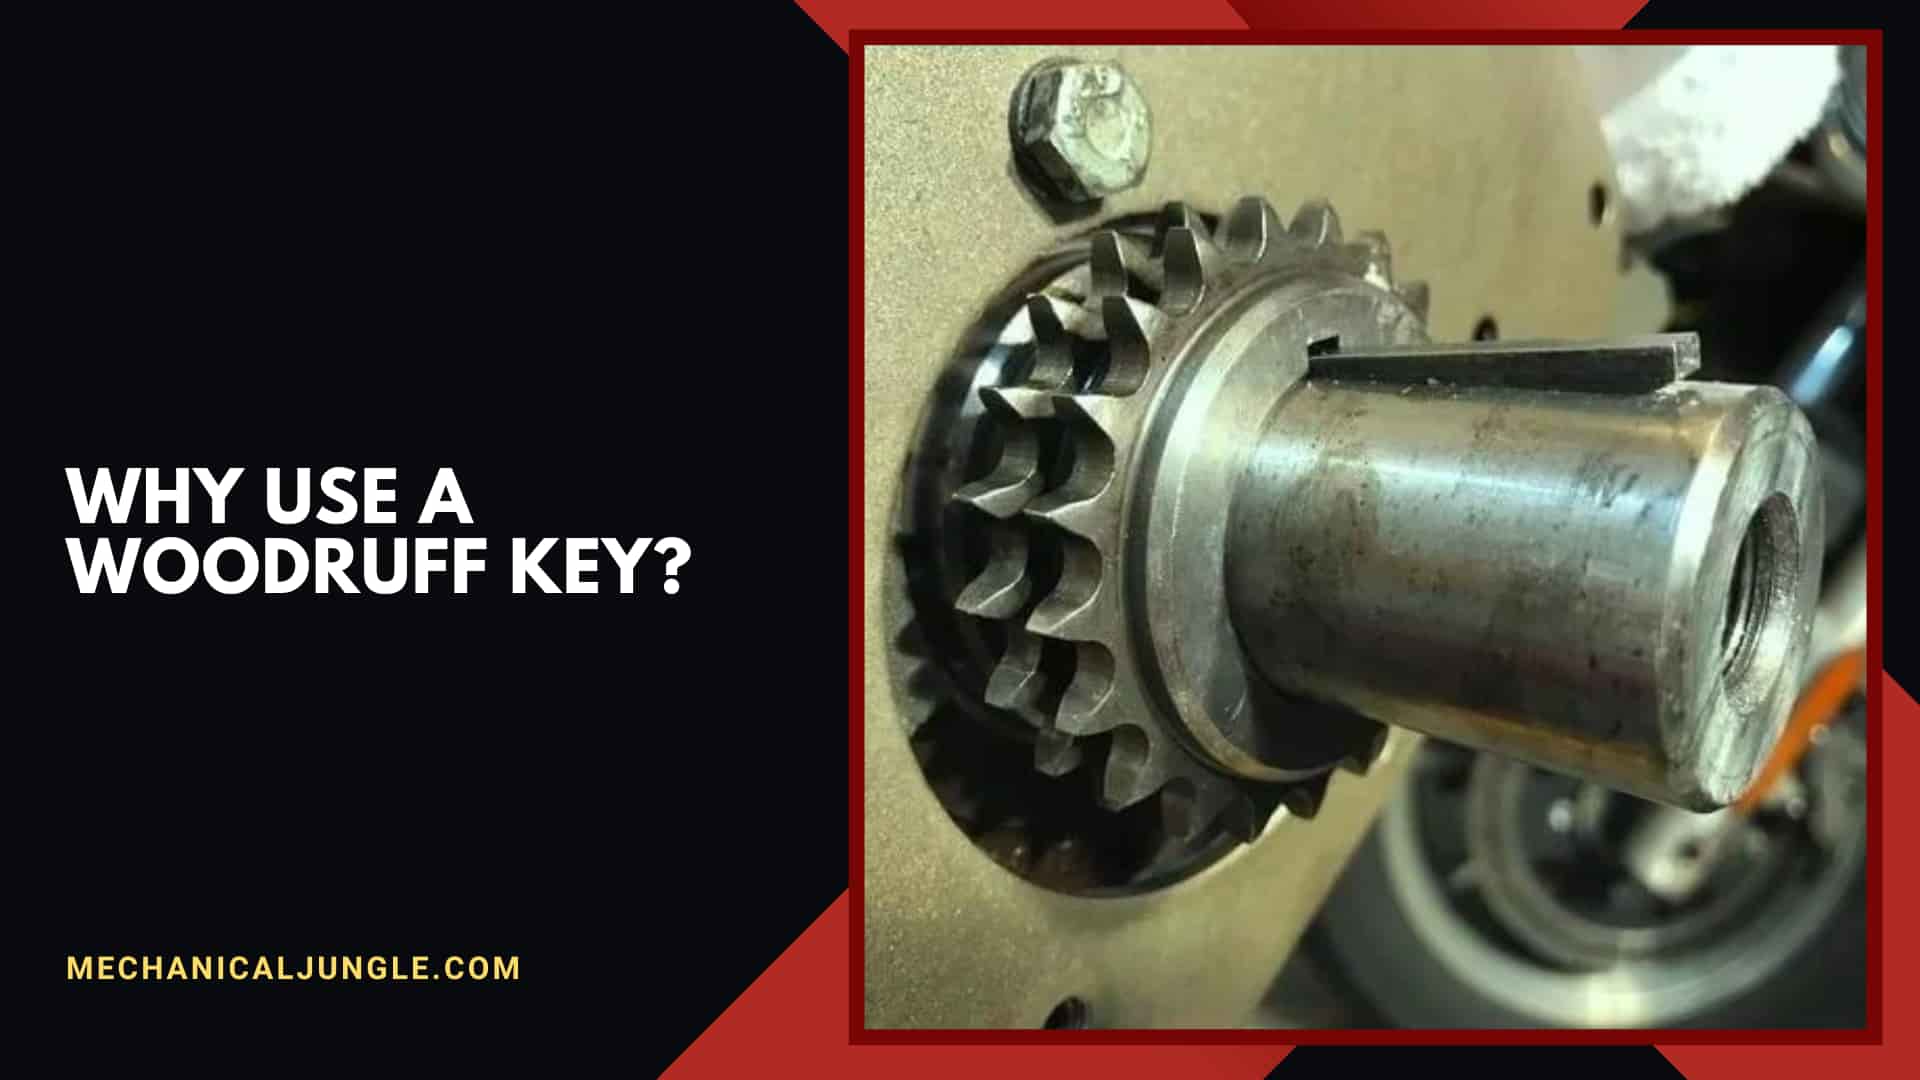 Why Use a Woodruff Key?